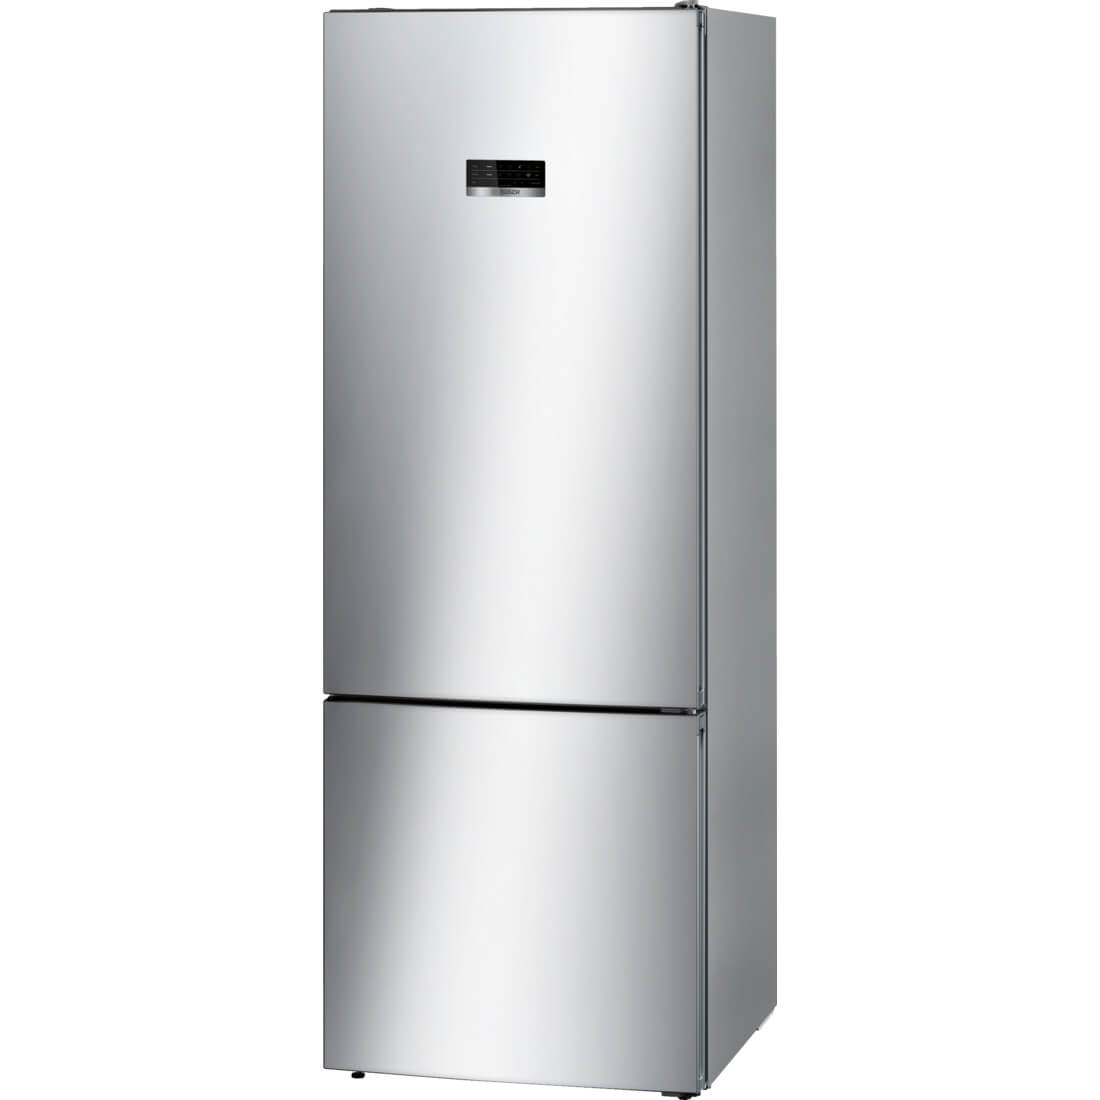  Combina frigorifica Bosch KGN56XL30, No Frost, 505 l, Clasa A++ 